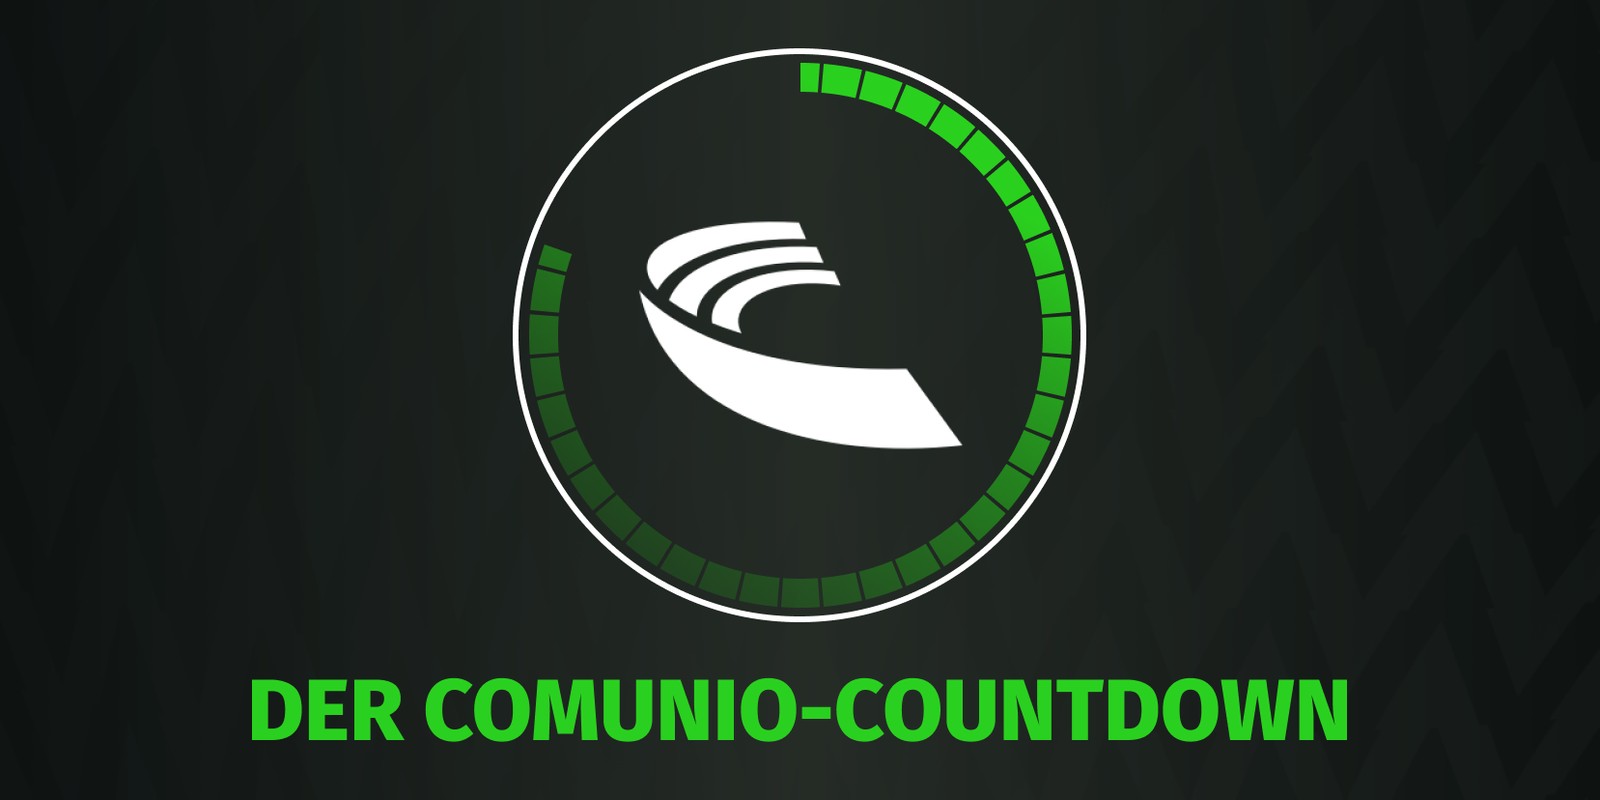 Der Comunio Countdown